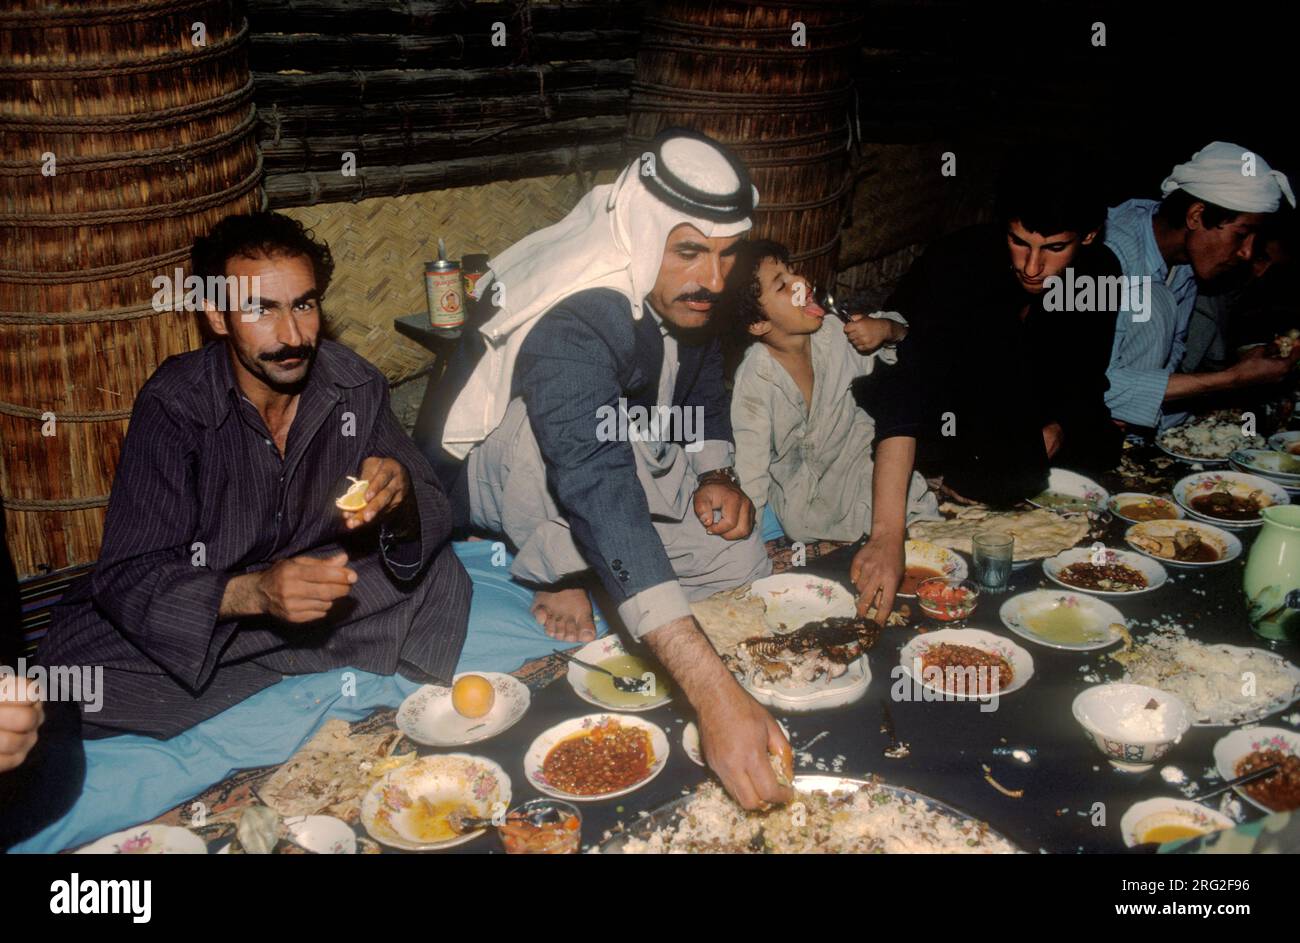 Marsh Arabs Southern Iraq 1984. Das Bankett findet in einem traditionellen Reed-Gebäude statt, das als Mudhif bezeichnet wird. Nur männliche Mitglieder der Gemeinde waren anwesend. Sie essen - nehmen Sie das Essen mit der linken Hand. Hammar marschiert im Irak 1980er HOMER SYKES Stockfoto